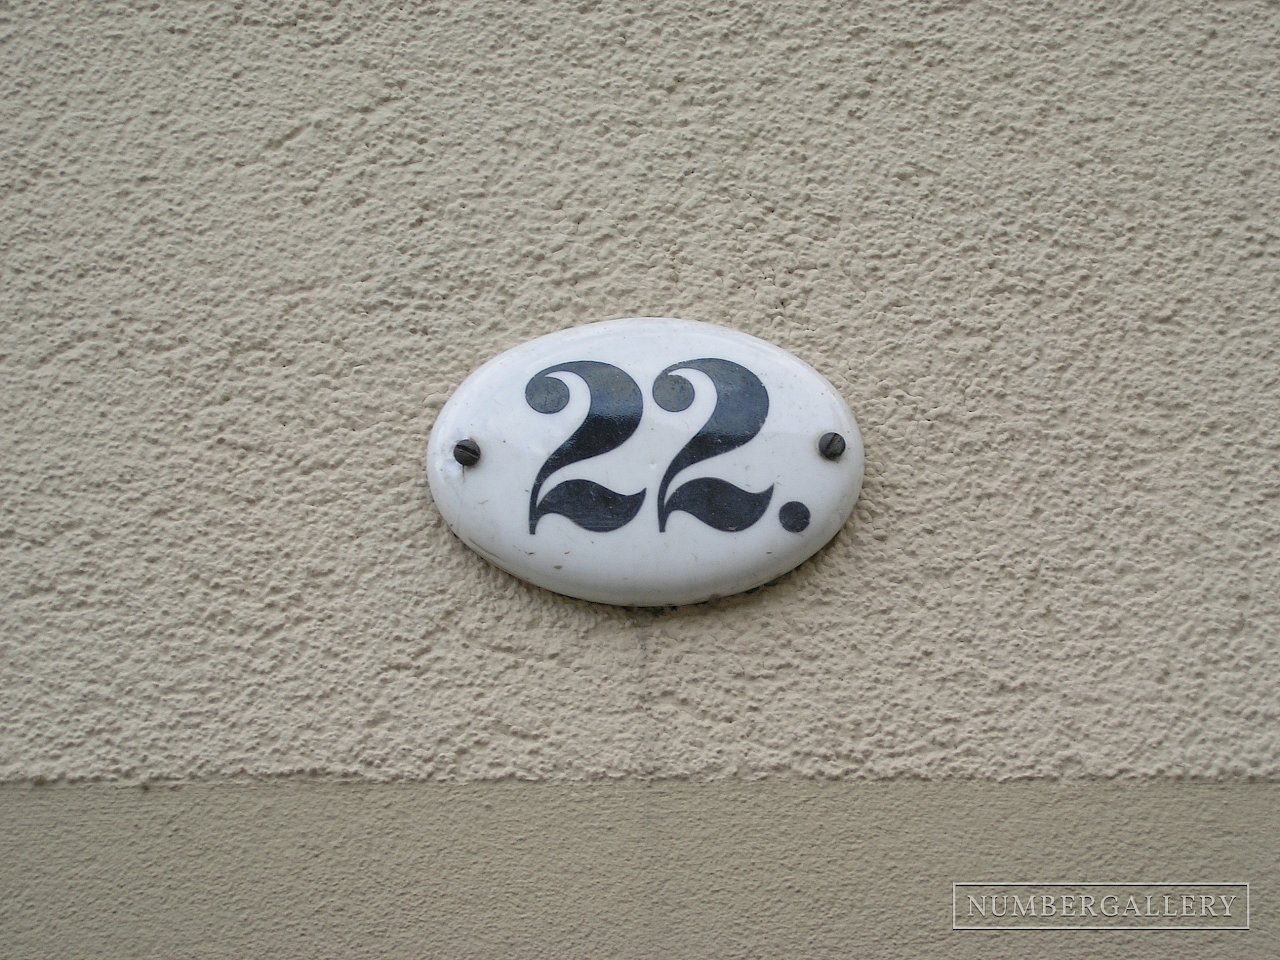 Hausnummer in Altenburg